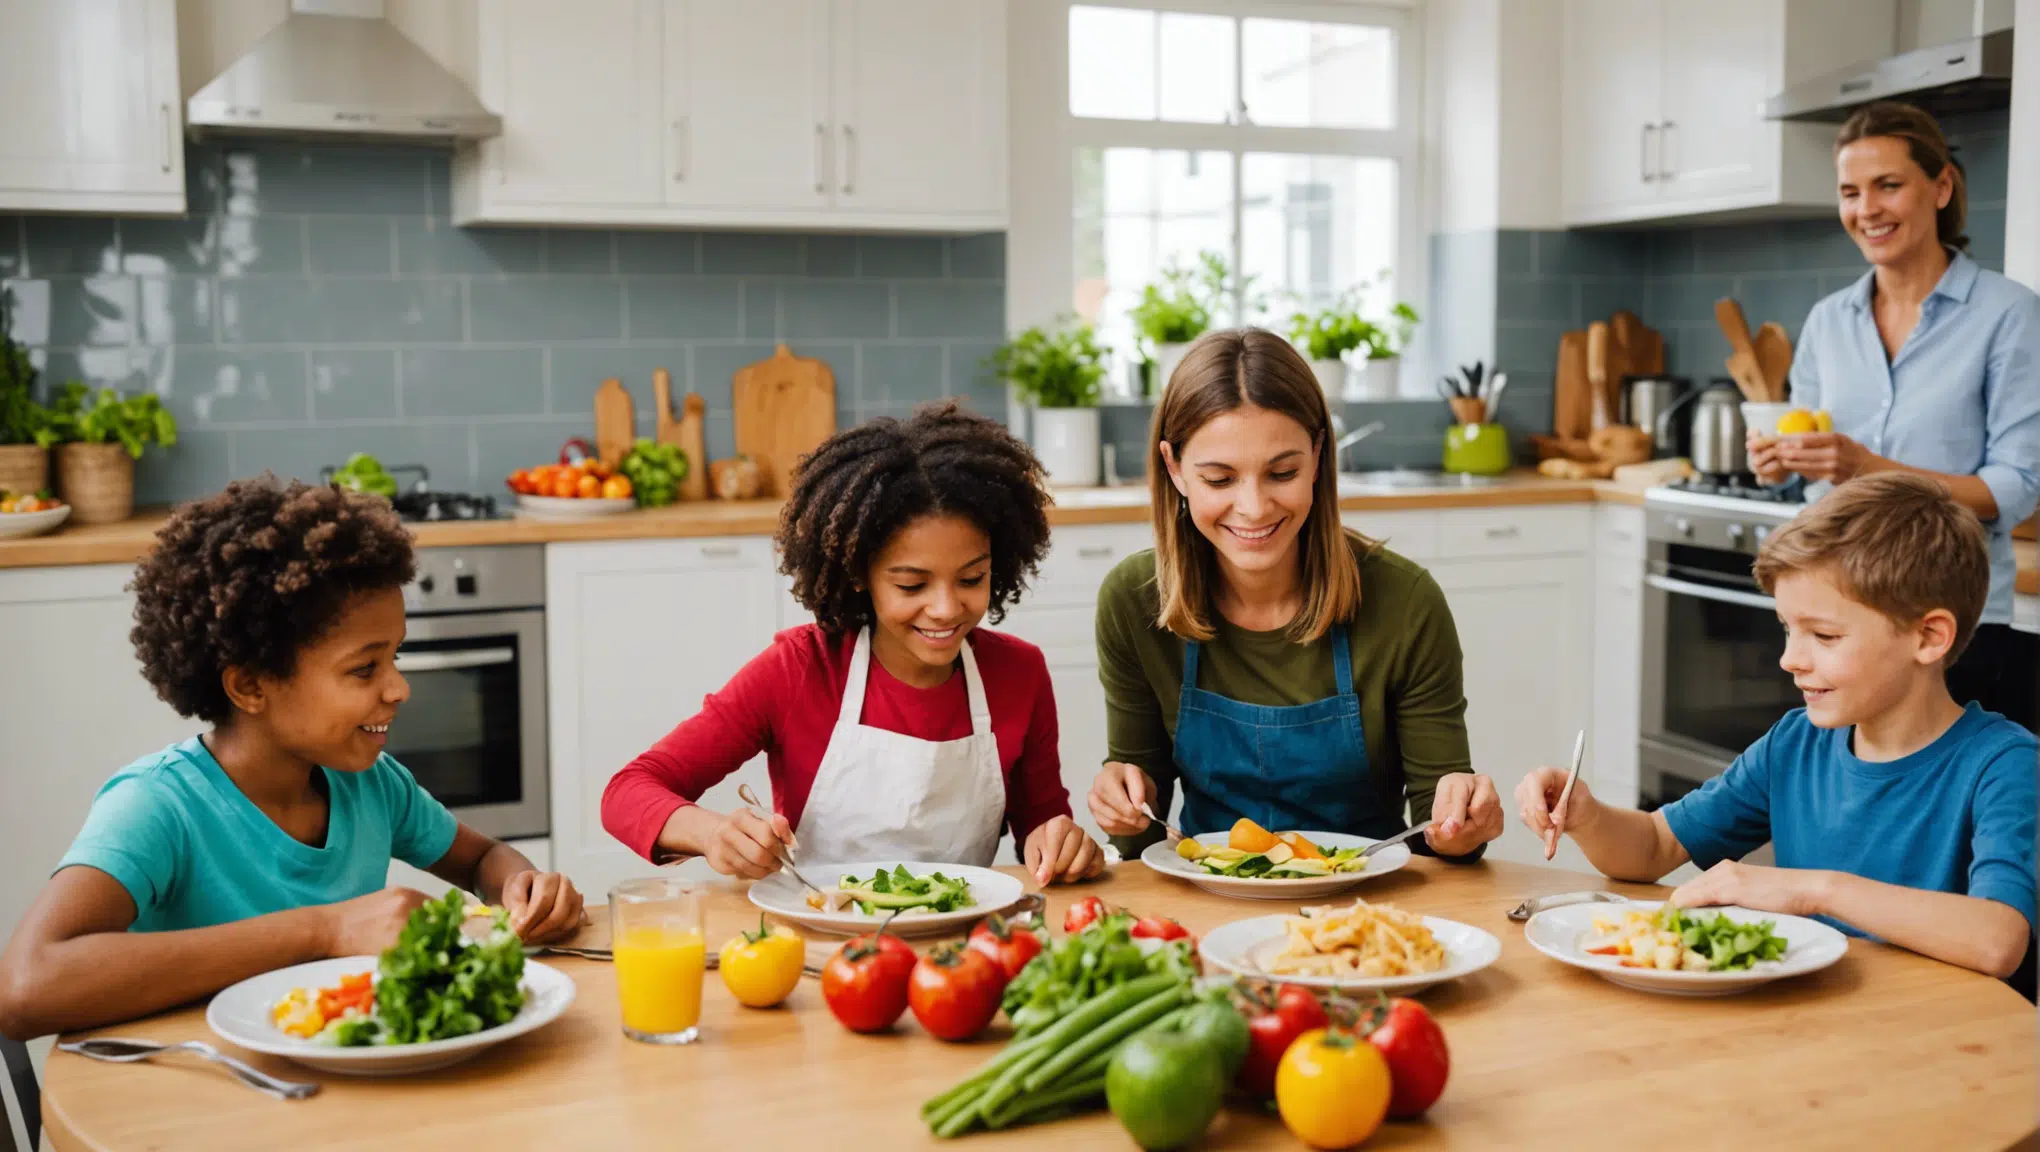 découvrez des idées de jeux en cuisine pour rendre les repas familiaux ludiques et amusants. des activités culinaires pour toute la famille !